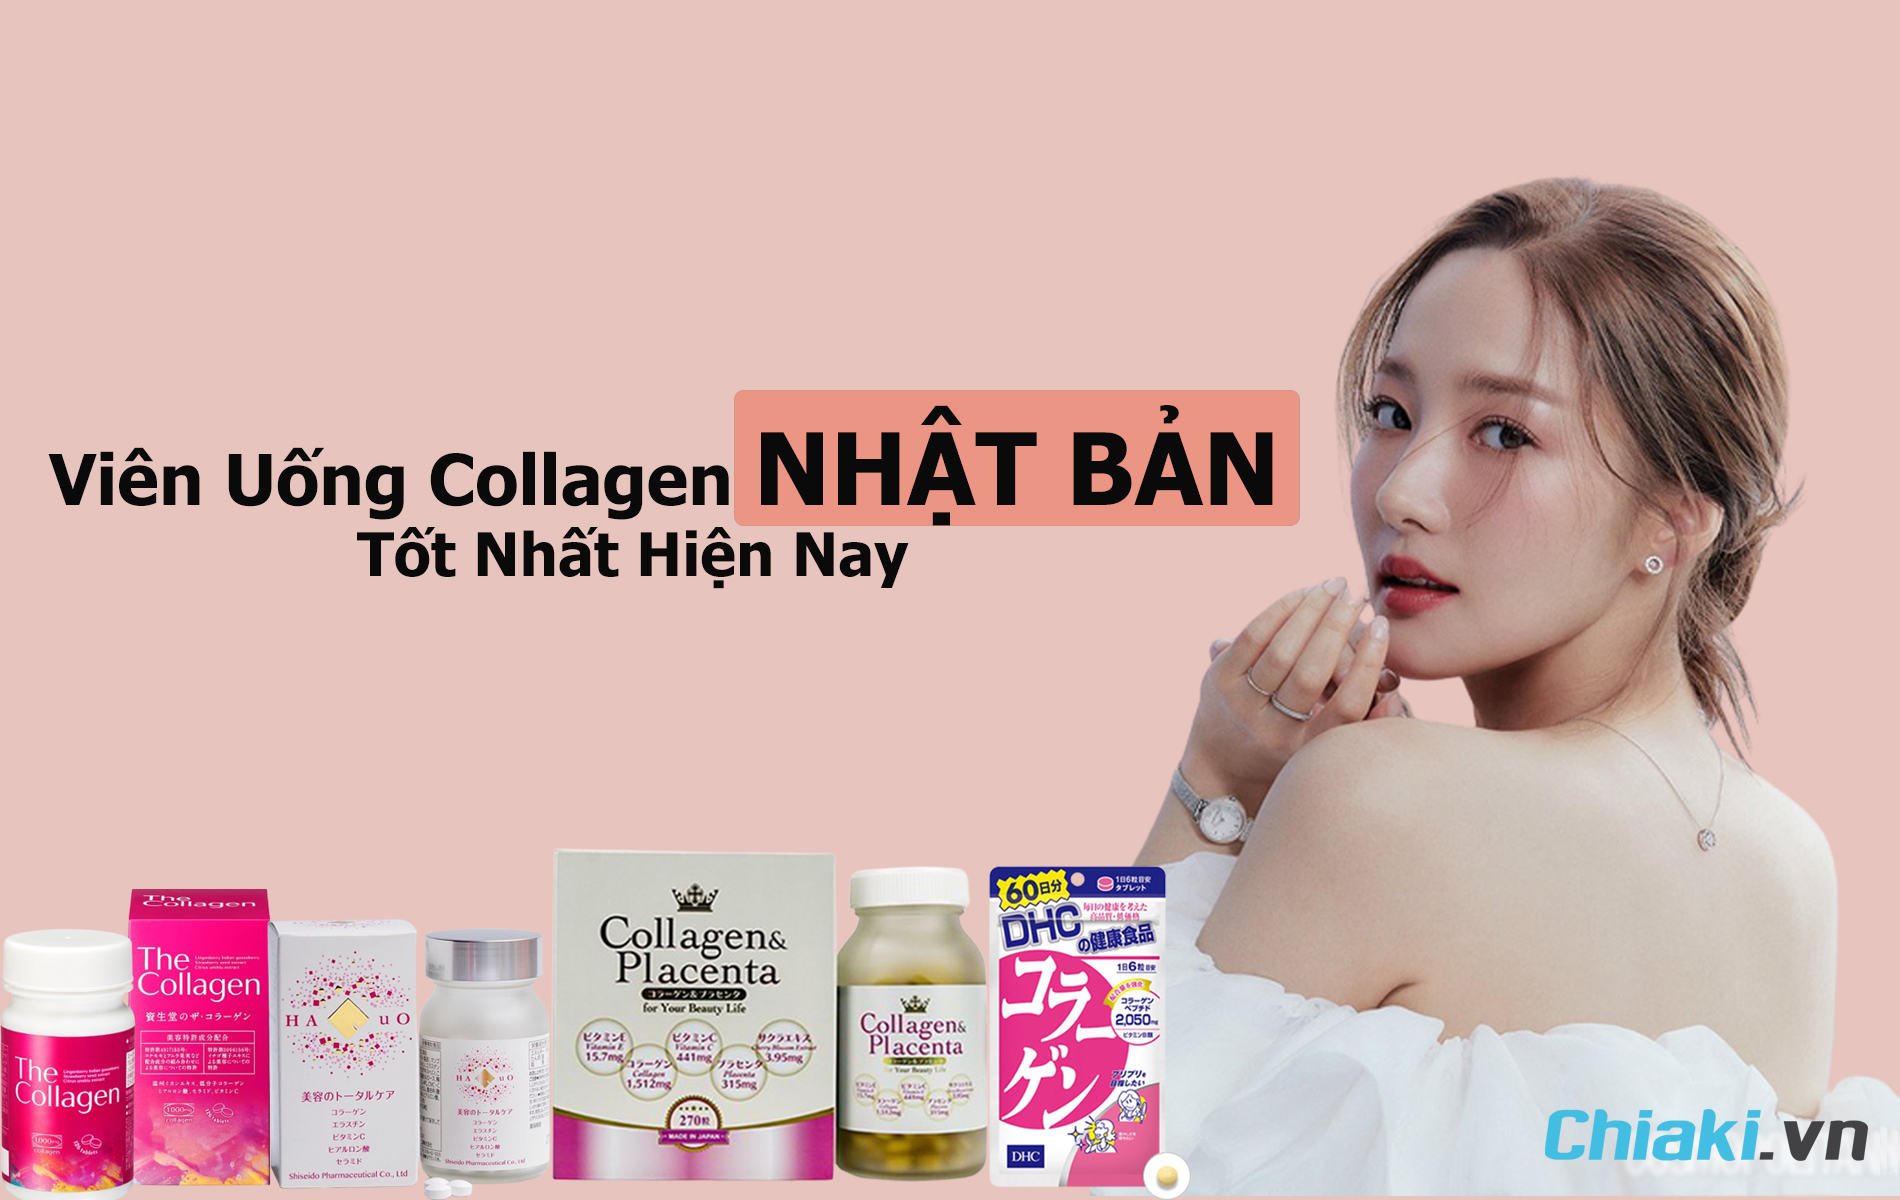 Có bao nhiêu loại collagen dạng bột của Hàn Quốc?
